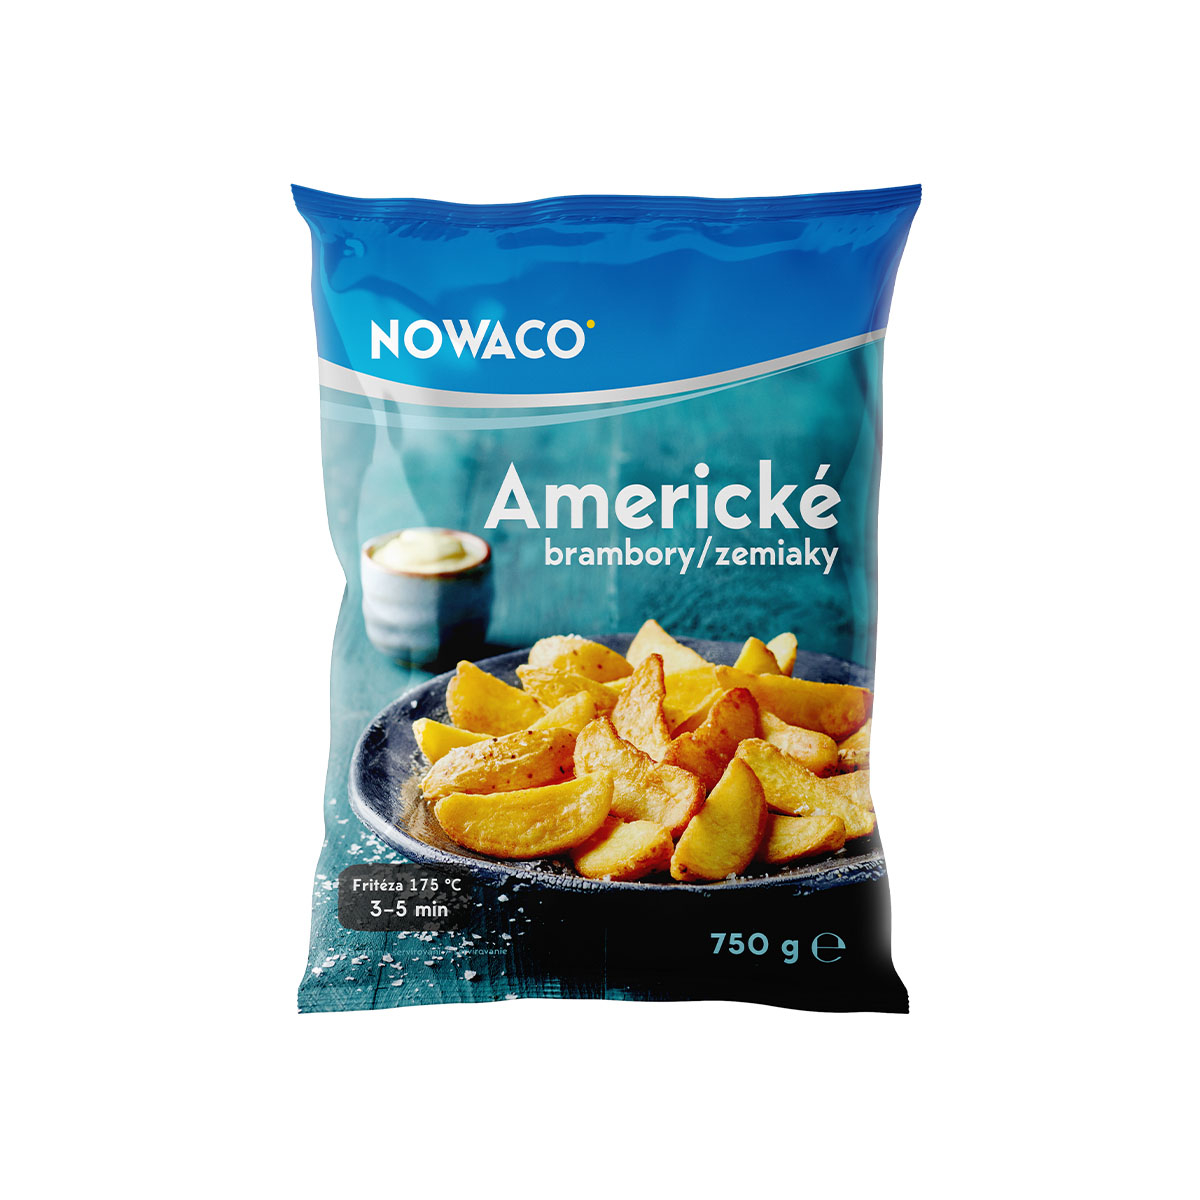 Americké brambory do trouby kořeněné Nowaco 750g